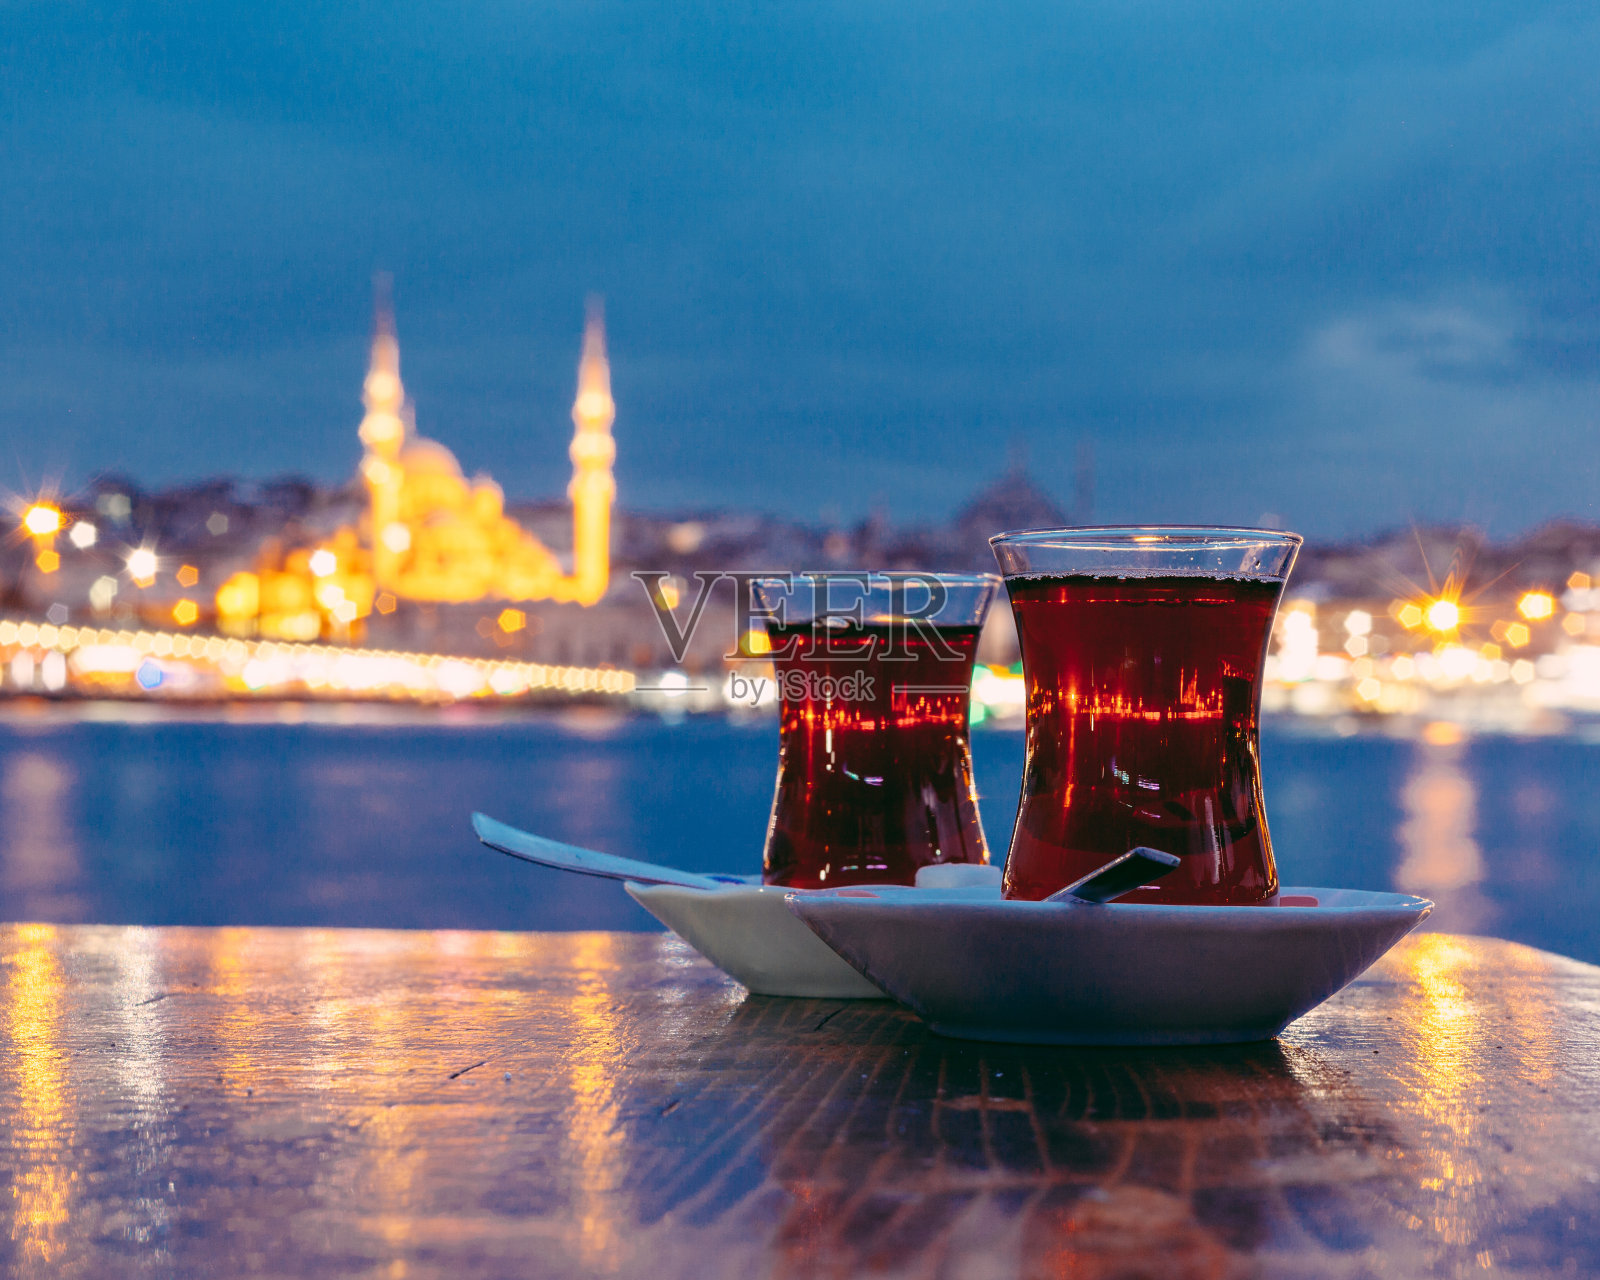 以伊斯坦布尔为背景的典型土耳其茶照片摄影图片